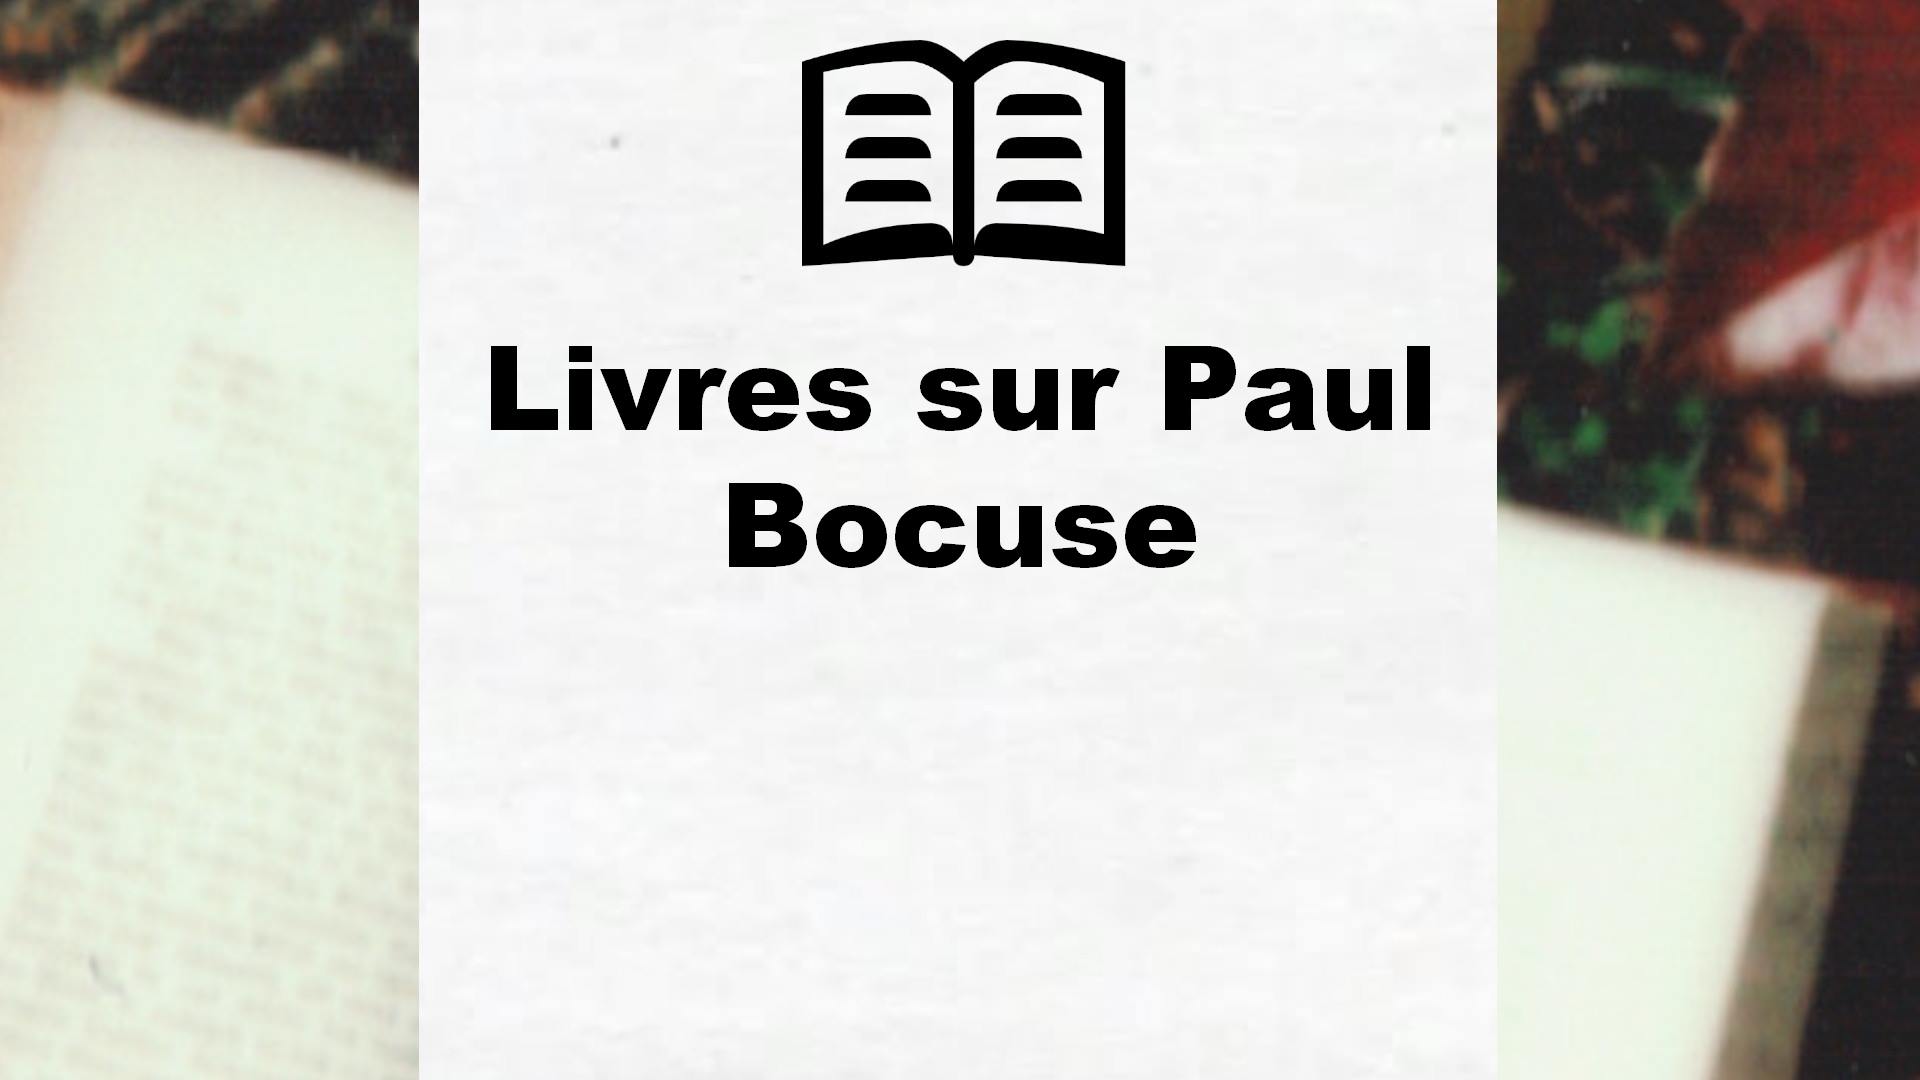 Livres sur Paul Bocuse